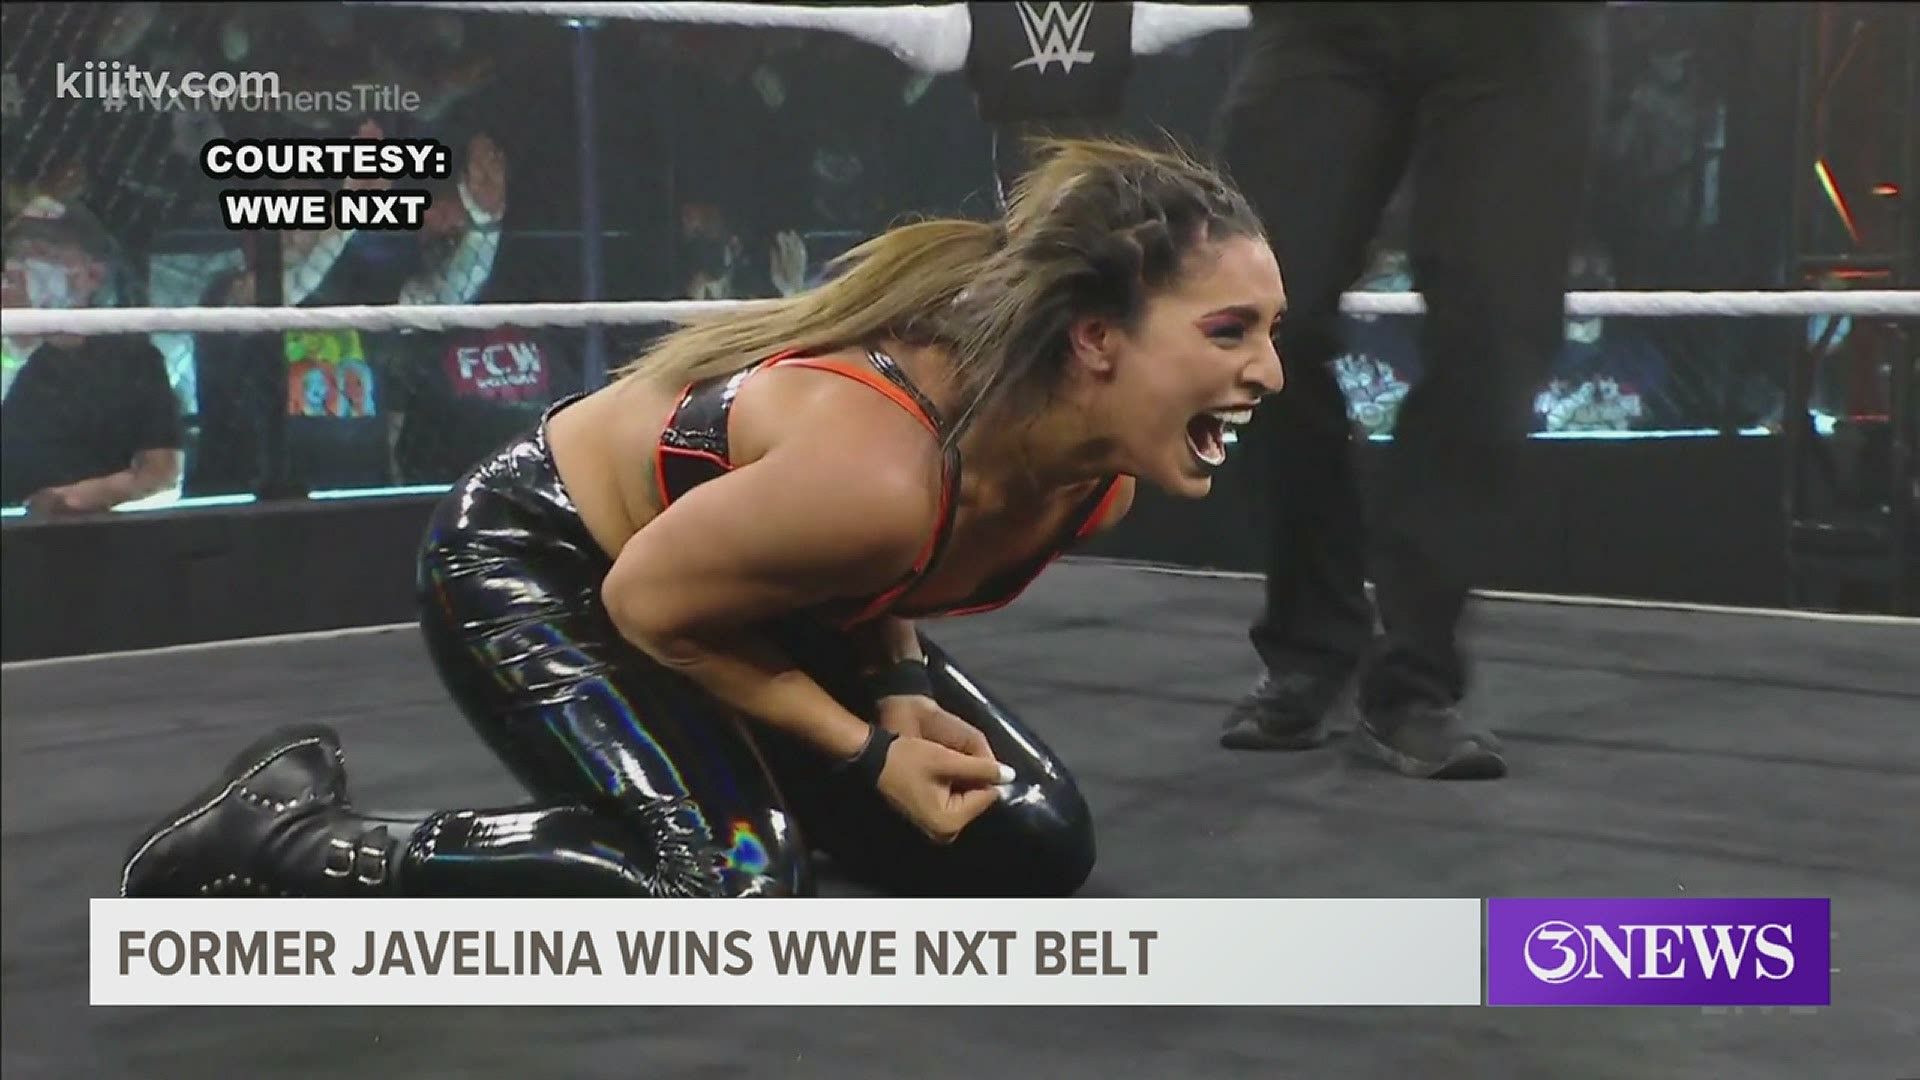 Victoria Gonzalez (now Raquel Gonzalez in wrestling) won her first WWE NXT women's title Wednesday.